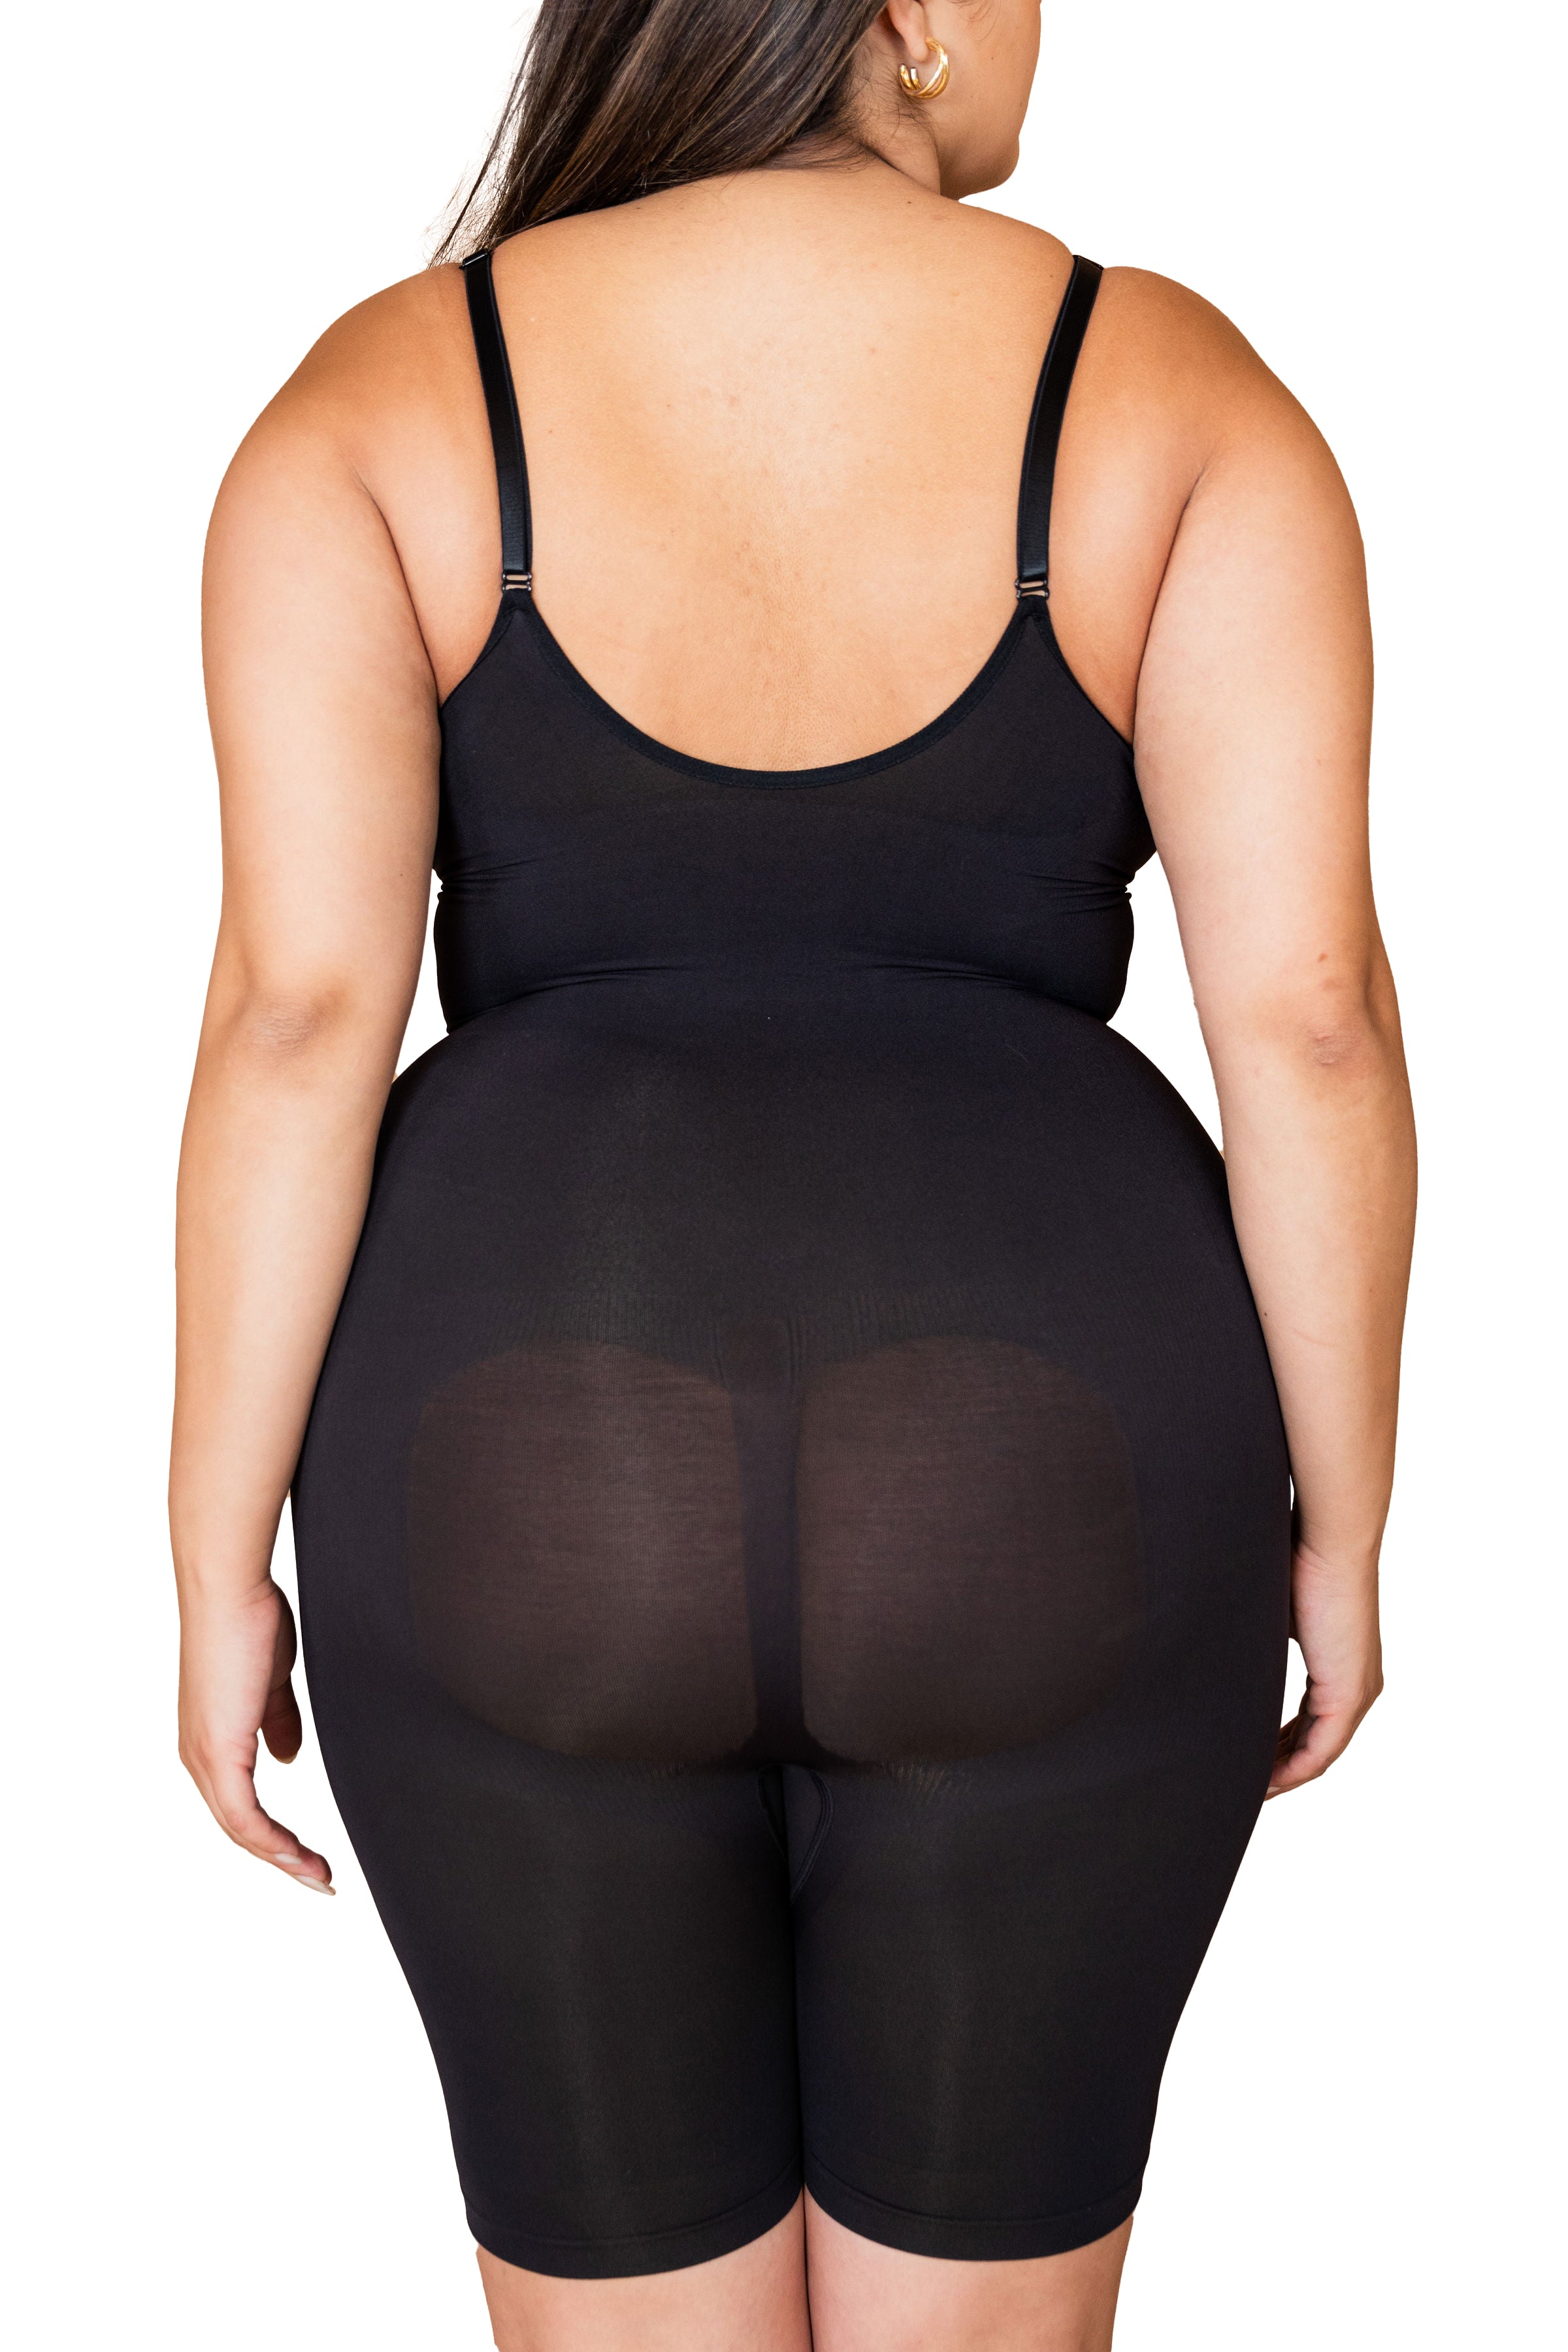 Contour mid-thigh bodysuit shape wear negro faja modeladora cómoda soporte tallas grandes extragrandes todas las tallas